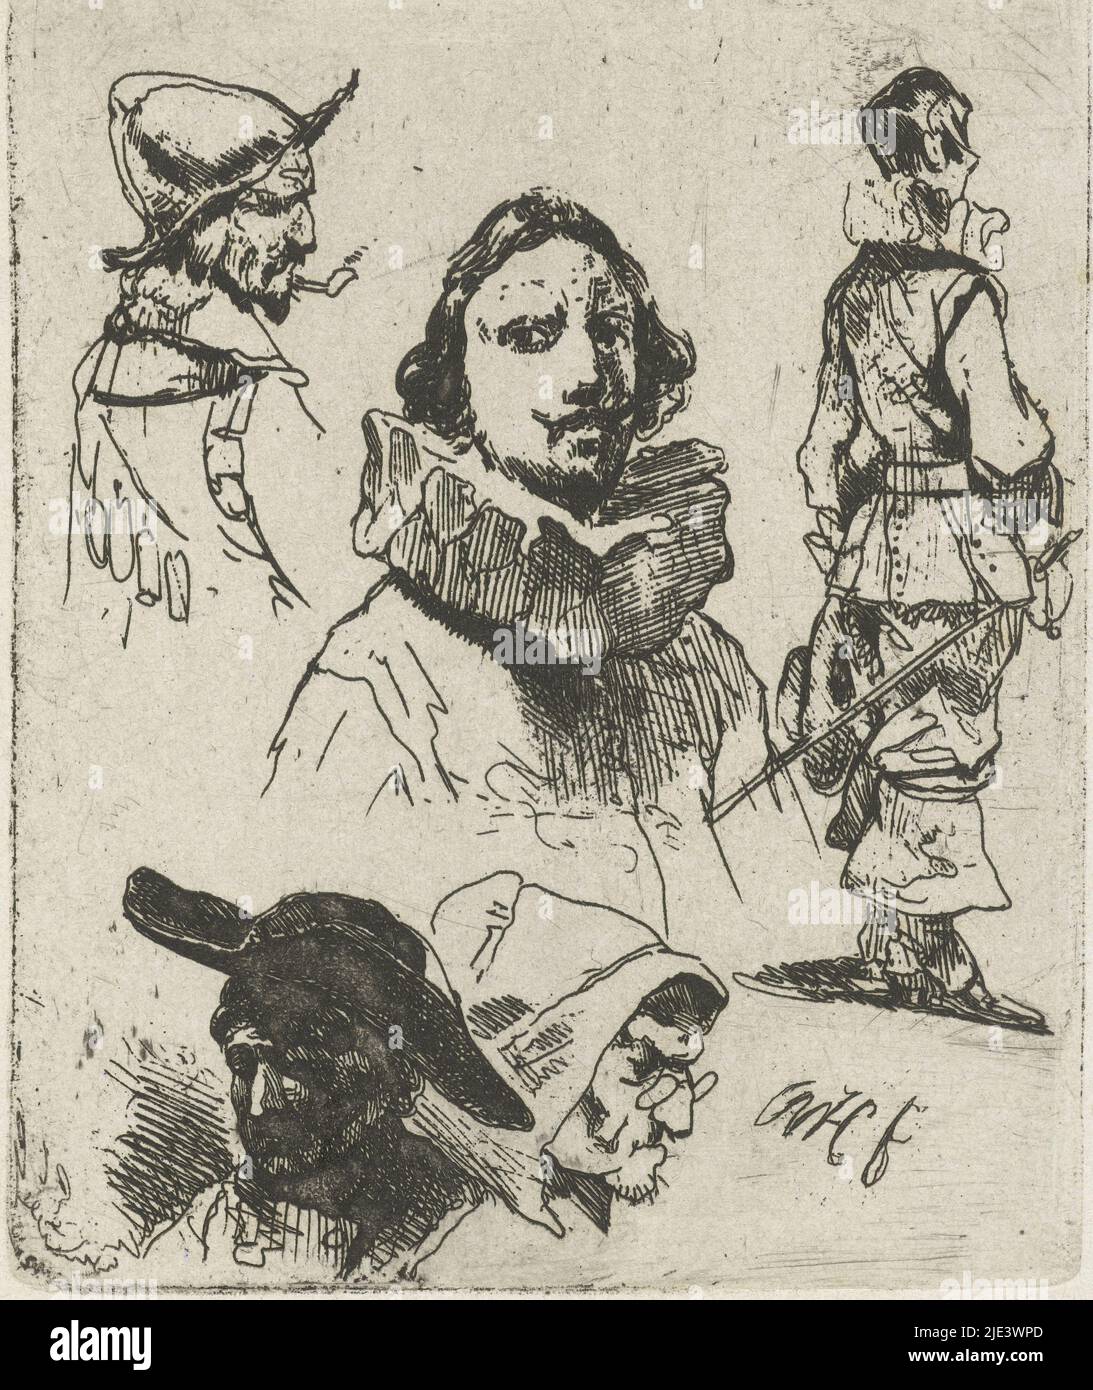 Feuille d'étude avec des soldats et une vieille femme, Willem Pieter Hoevenaar, 1818 - 1863, feuille d'étude avec un buste d'un homme avec un large collier plissé au centre. À droite, un soldat en pleine longueur vu de l'arrière et de la gauche, un buste d'un soldat en profil à droite avec un casque sur sa tête et une pipe dans sa bouche. Ci-dessous, une tête d'une vieille femme avec des lunettes en profil à droite et un homme portant un béret à gauche., imprimeur: Willem Pieter Hoevenaar, (mentionné sur l'objet), Utrecht, 1818 - 1863, papier, gravure, h 86 mm × l 70 mm Banque D'Images